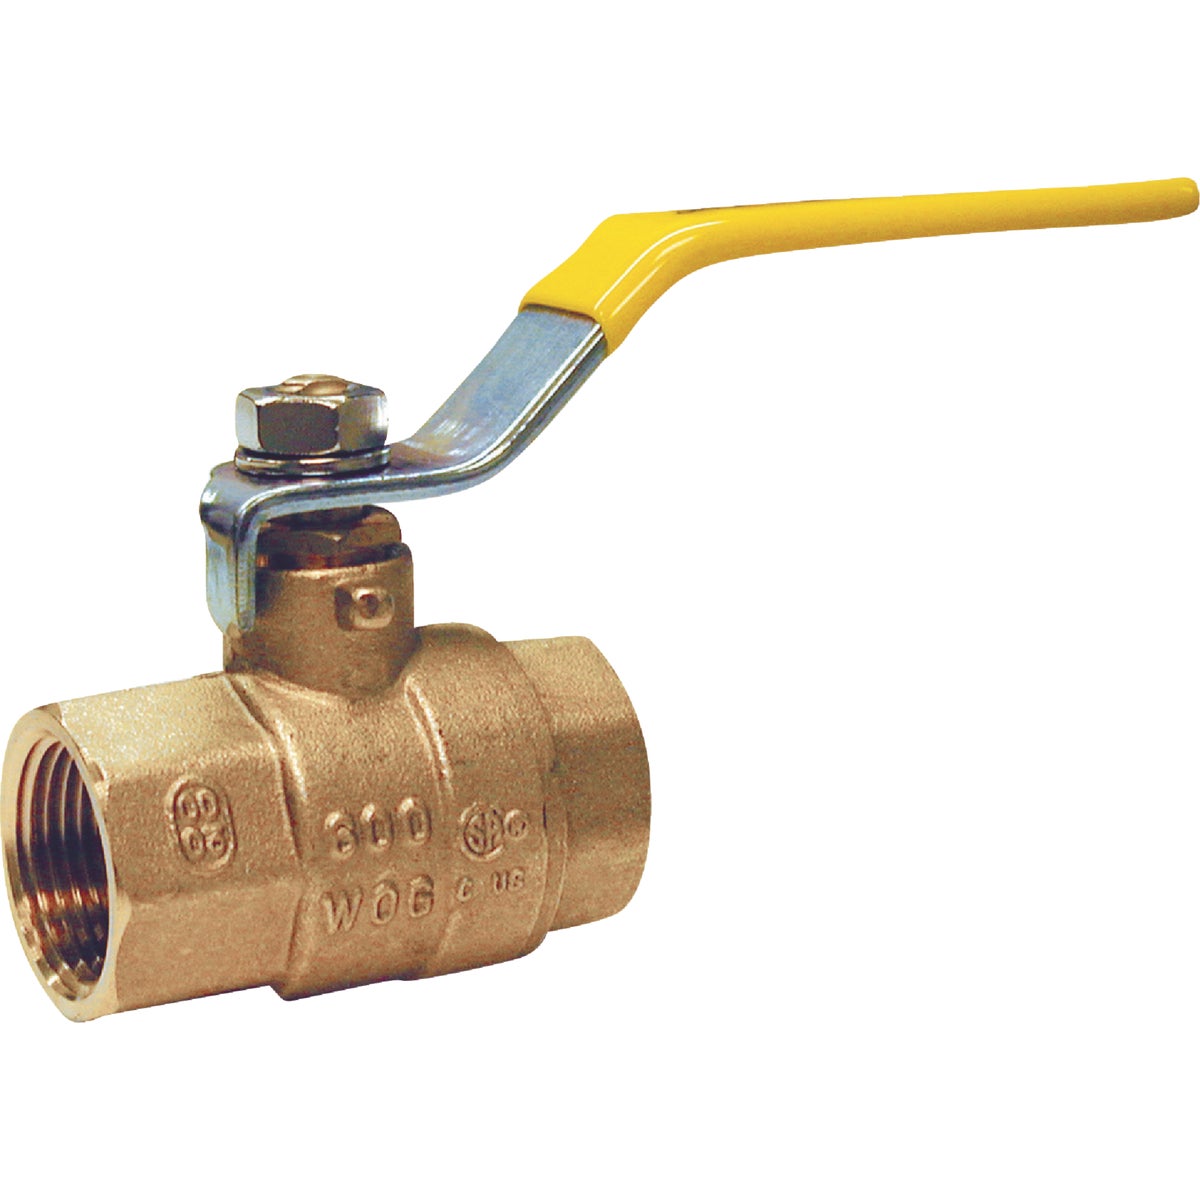 Item 400525, Brass full port packing gland ball valve FIP (female iron pipe) 600 psi (